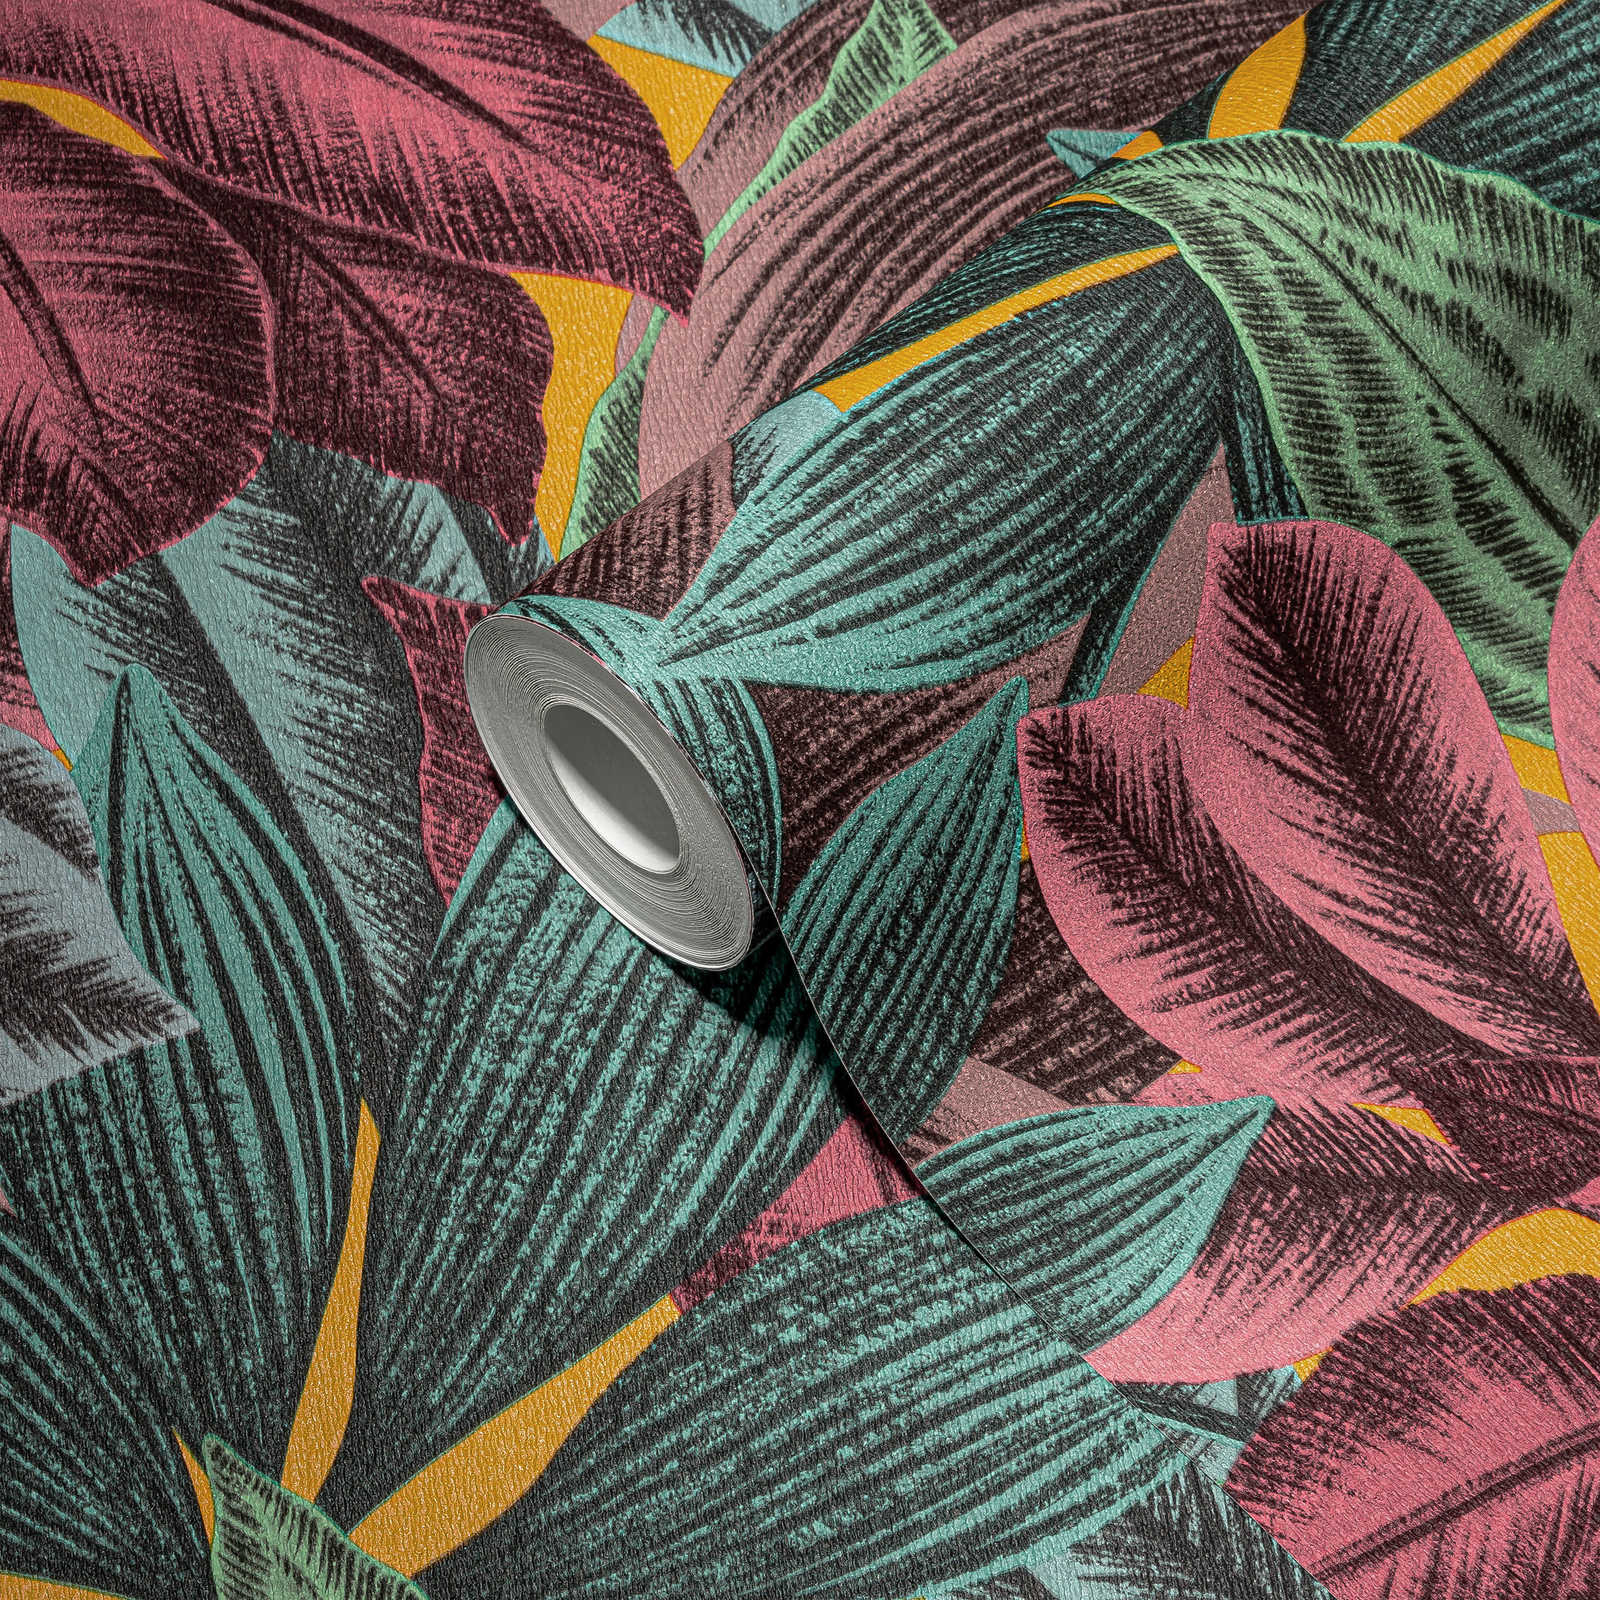             Vliestapete mit Blättermuster in bunten Farben – Bunt, Blau, Rosa
        